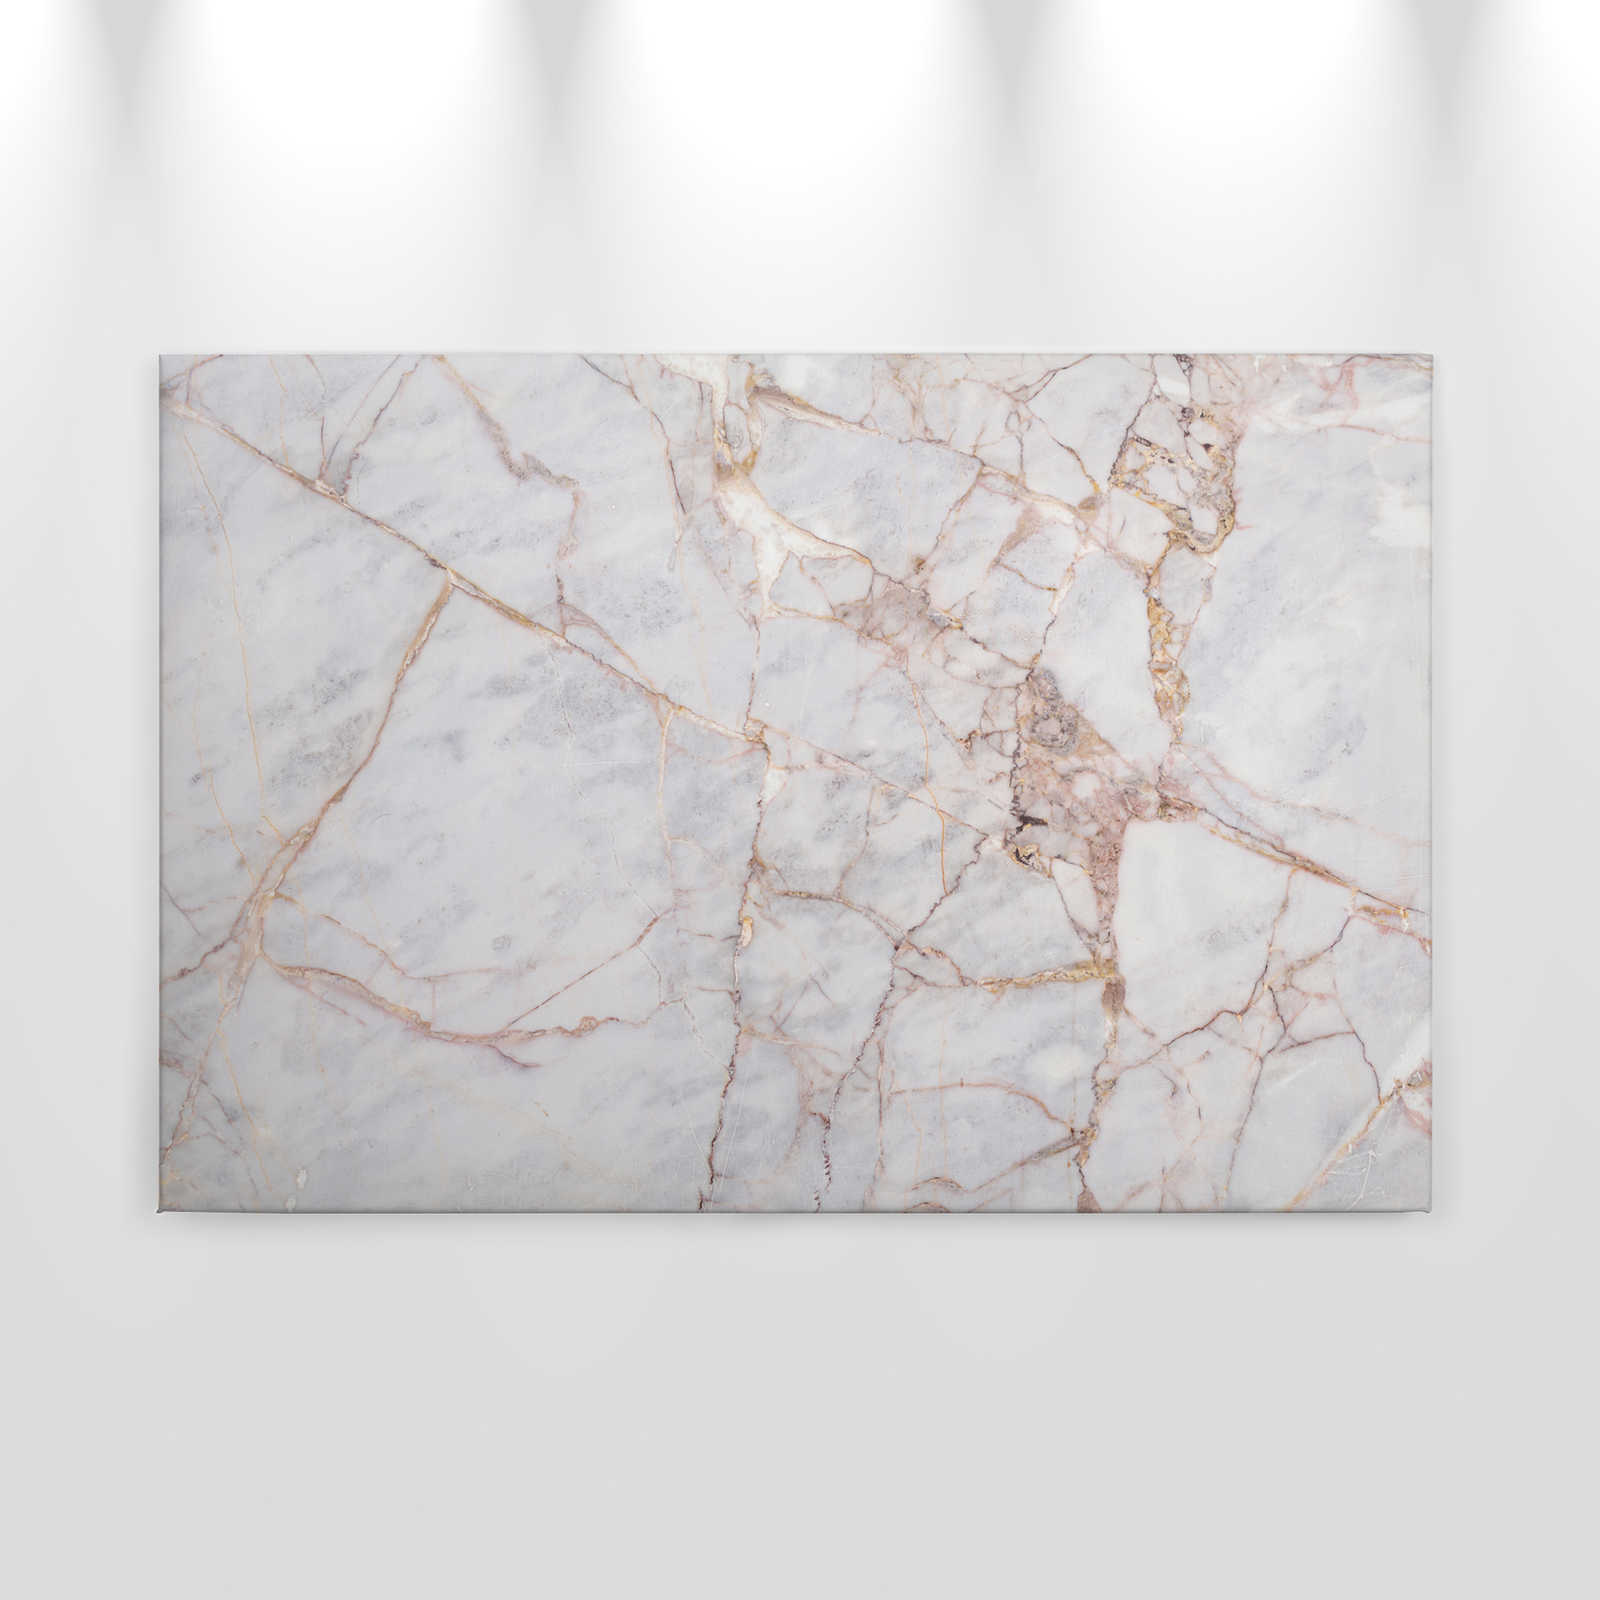             Canvas met natuurstenen oppervlak met scheuren - 0,90 m x 0,60 m
        